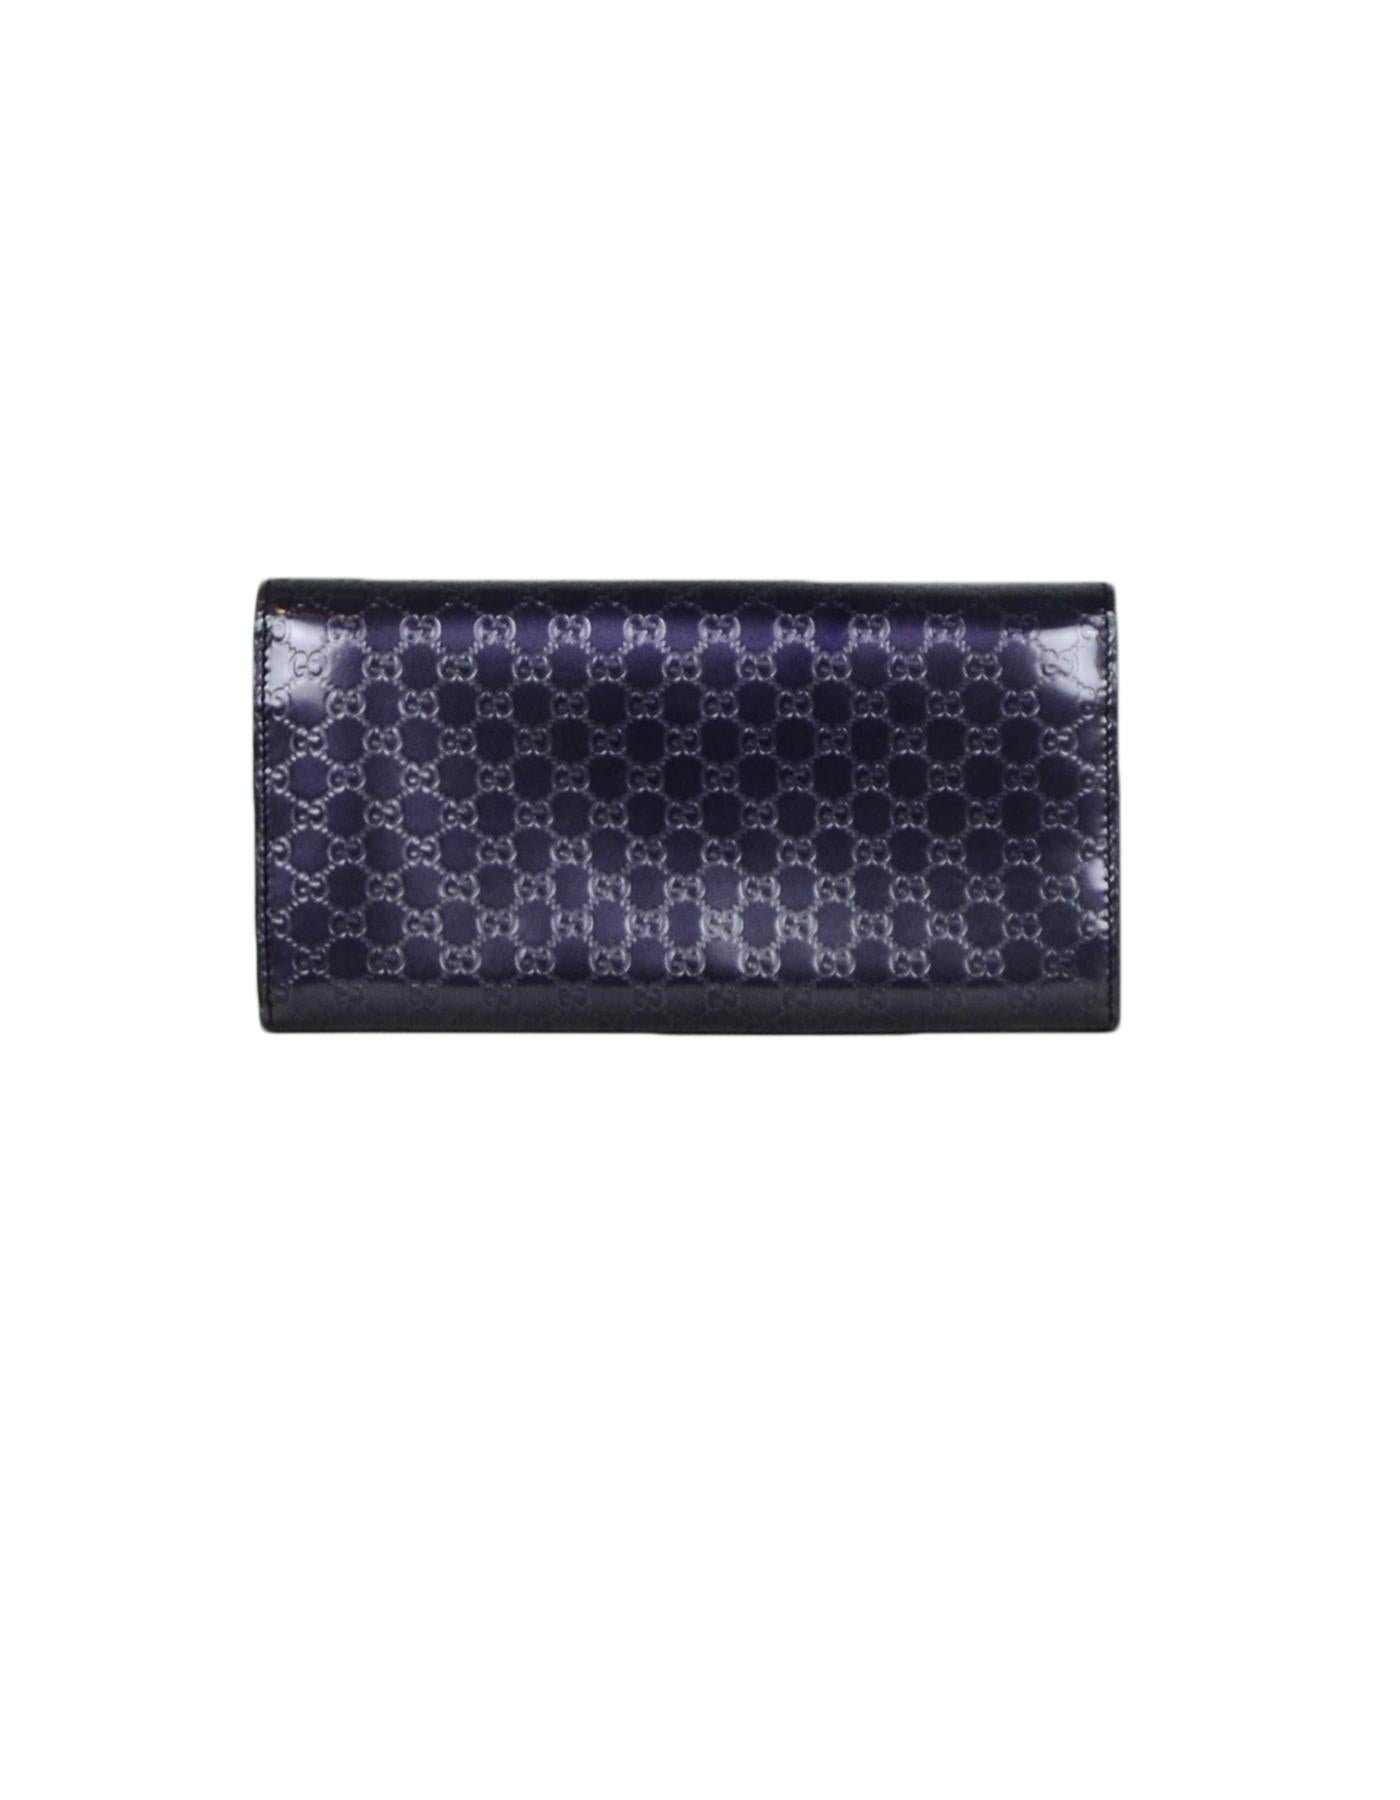 Black Gucci Purple Glazed Leather Micro Guccisima Monogram Candy Shine Wallet